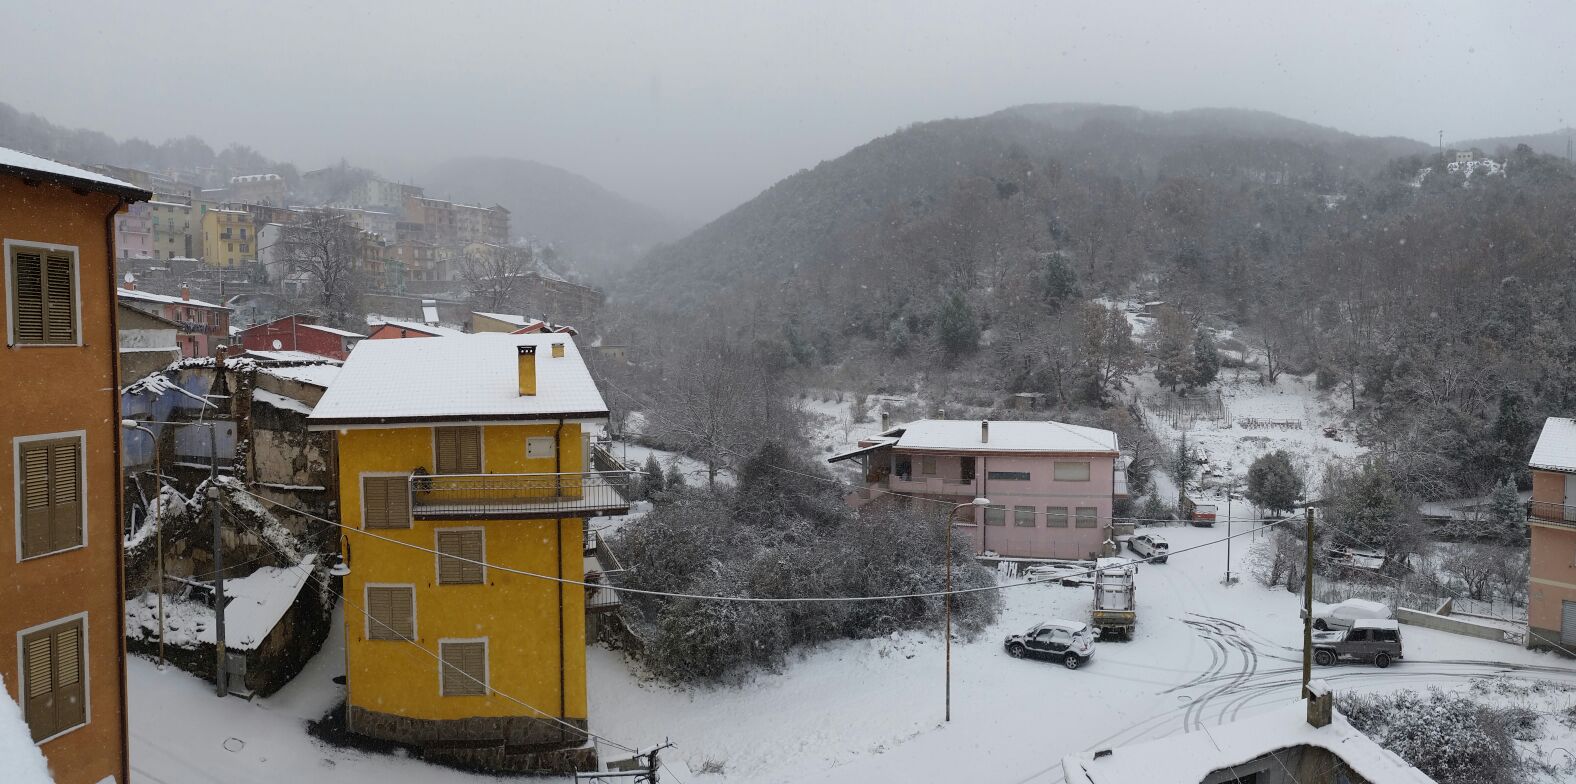 Desulo6 - Desulo, la neve cade abbondante: foto e video in real time